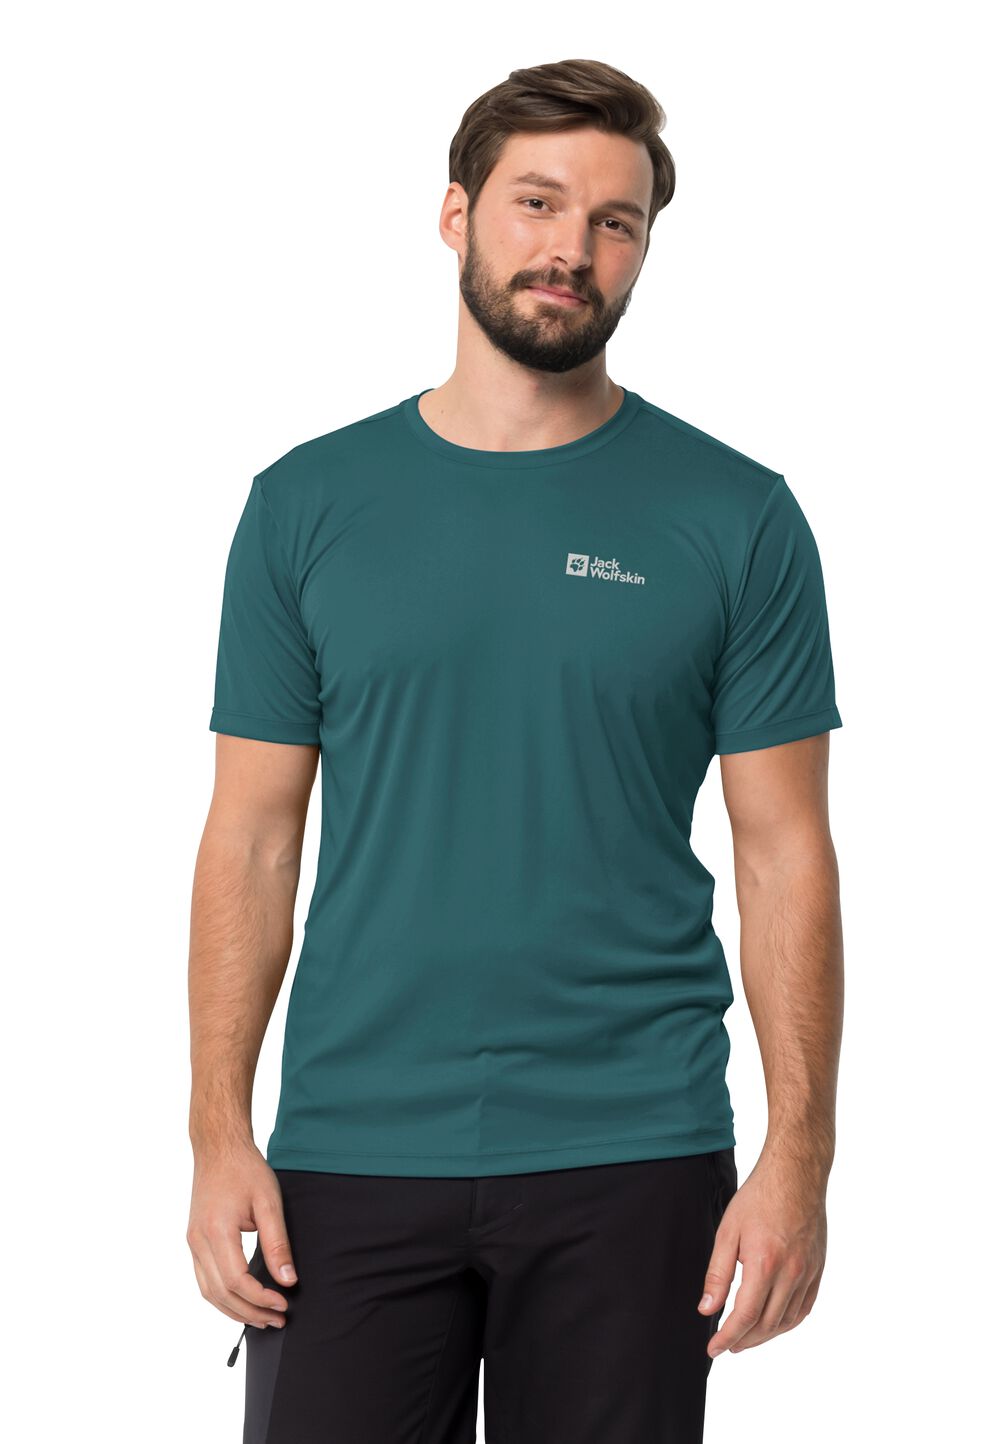 Jack Wolfskin Tech T-Shirt Men Functioneel shirt Heren S emerald